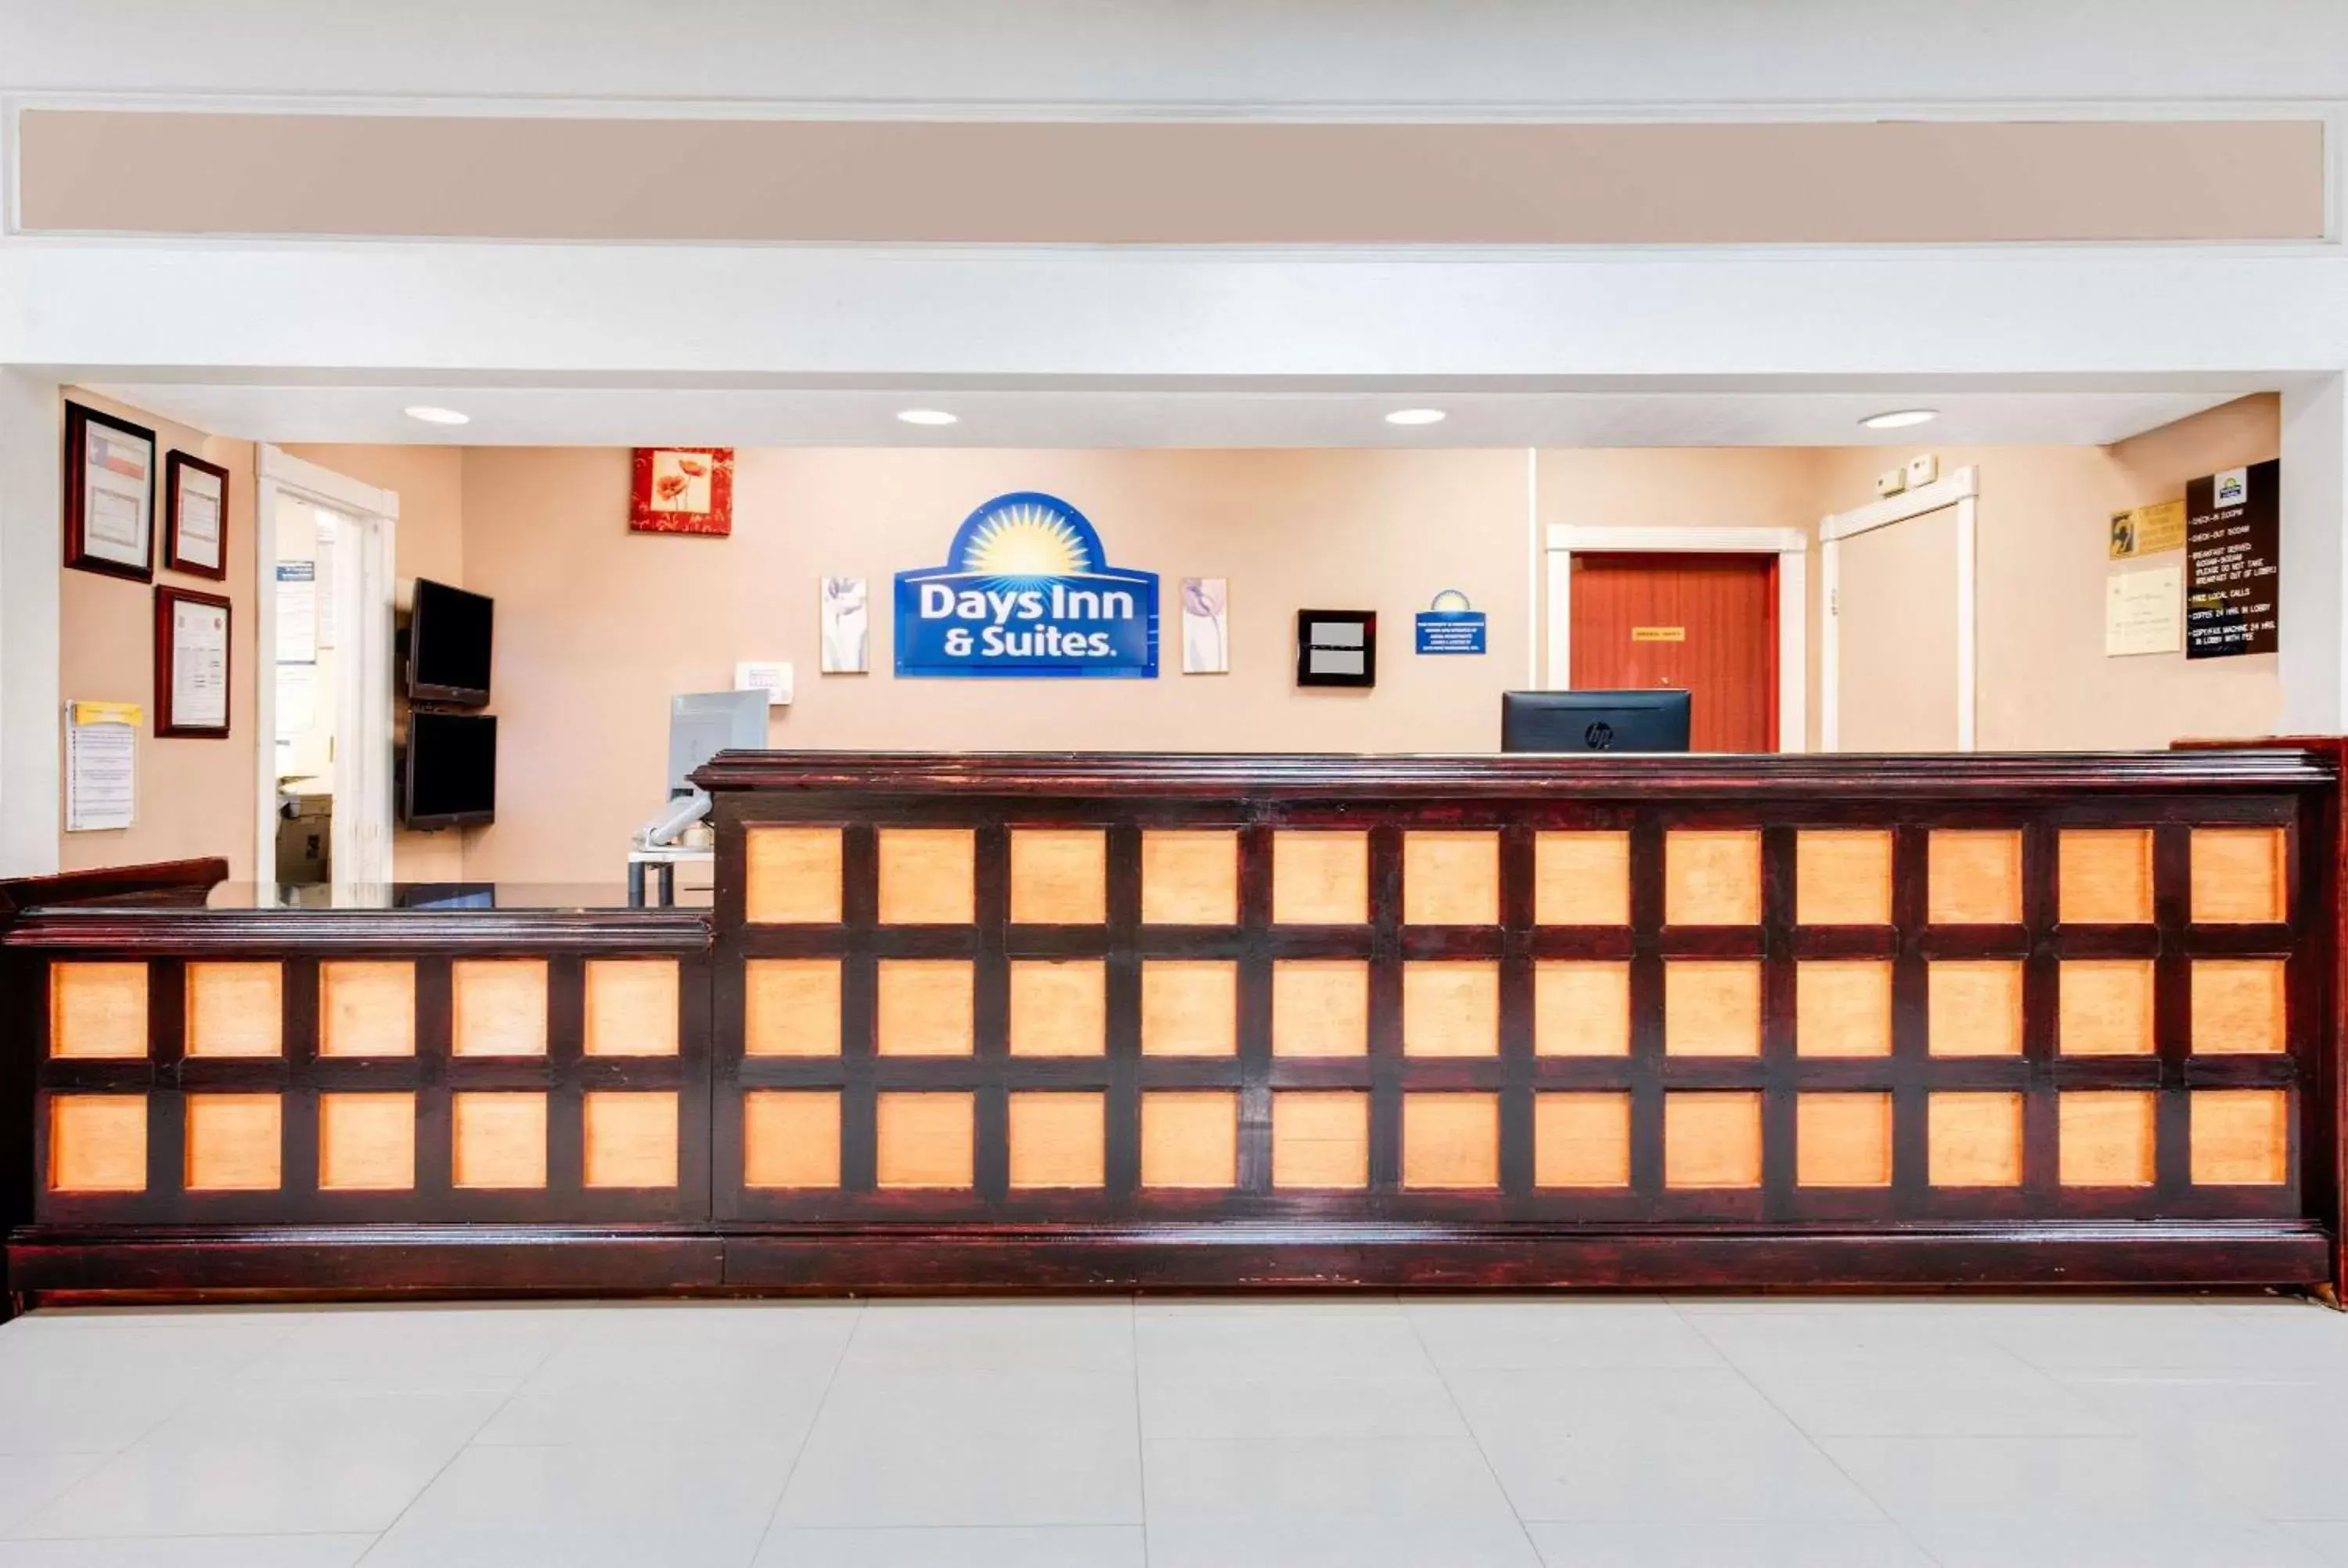 Lobby or reception, Lobby/Reception in Days Inn & Suites by Wyndham Laredo